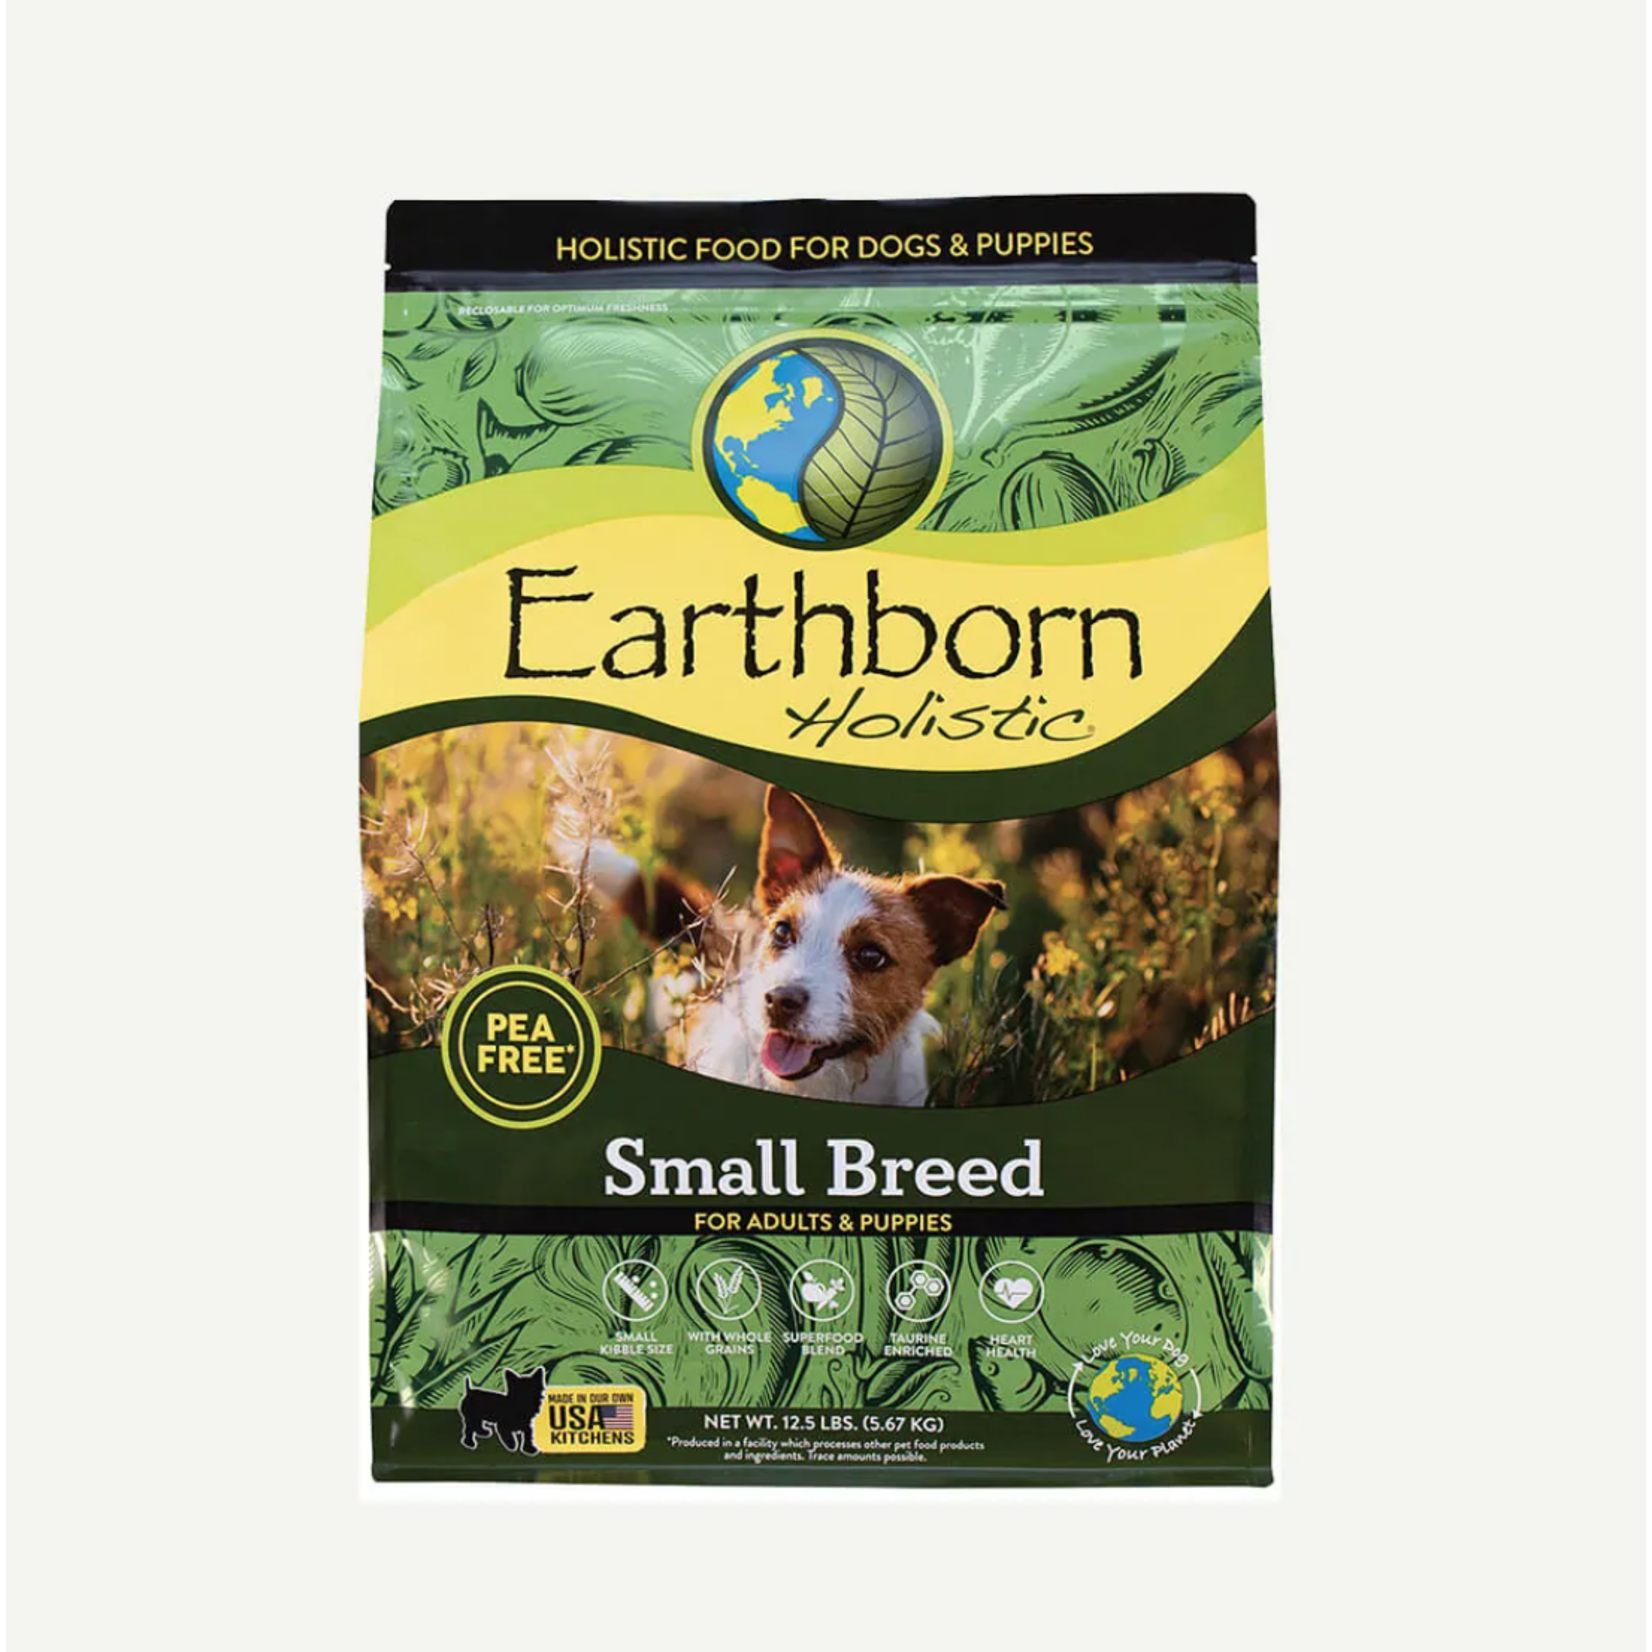 Earthborn Earthborn Small Breed Dog Food